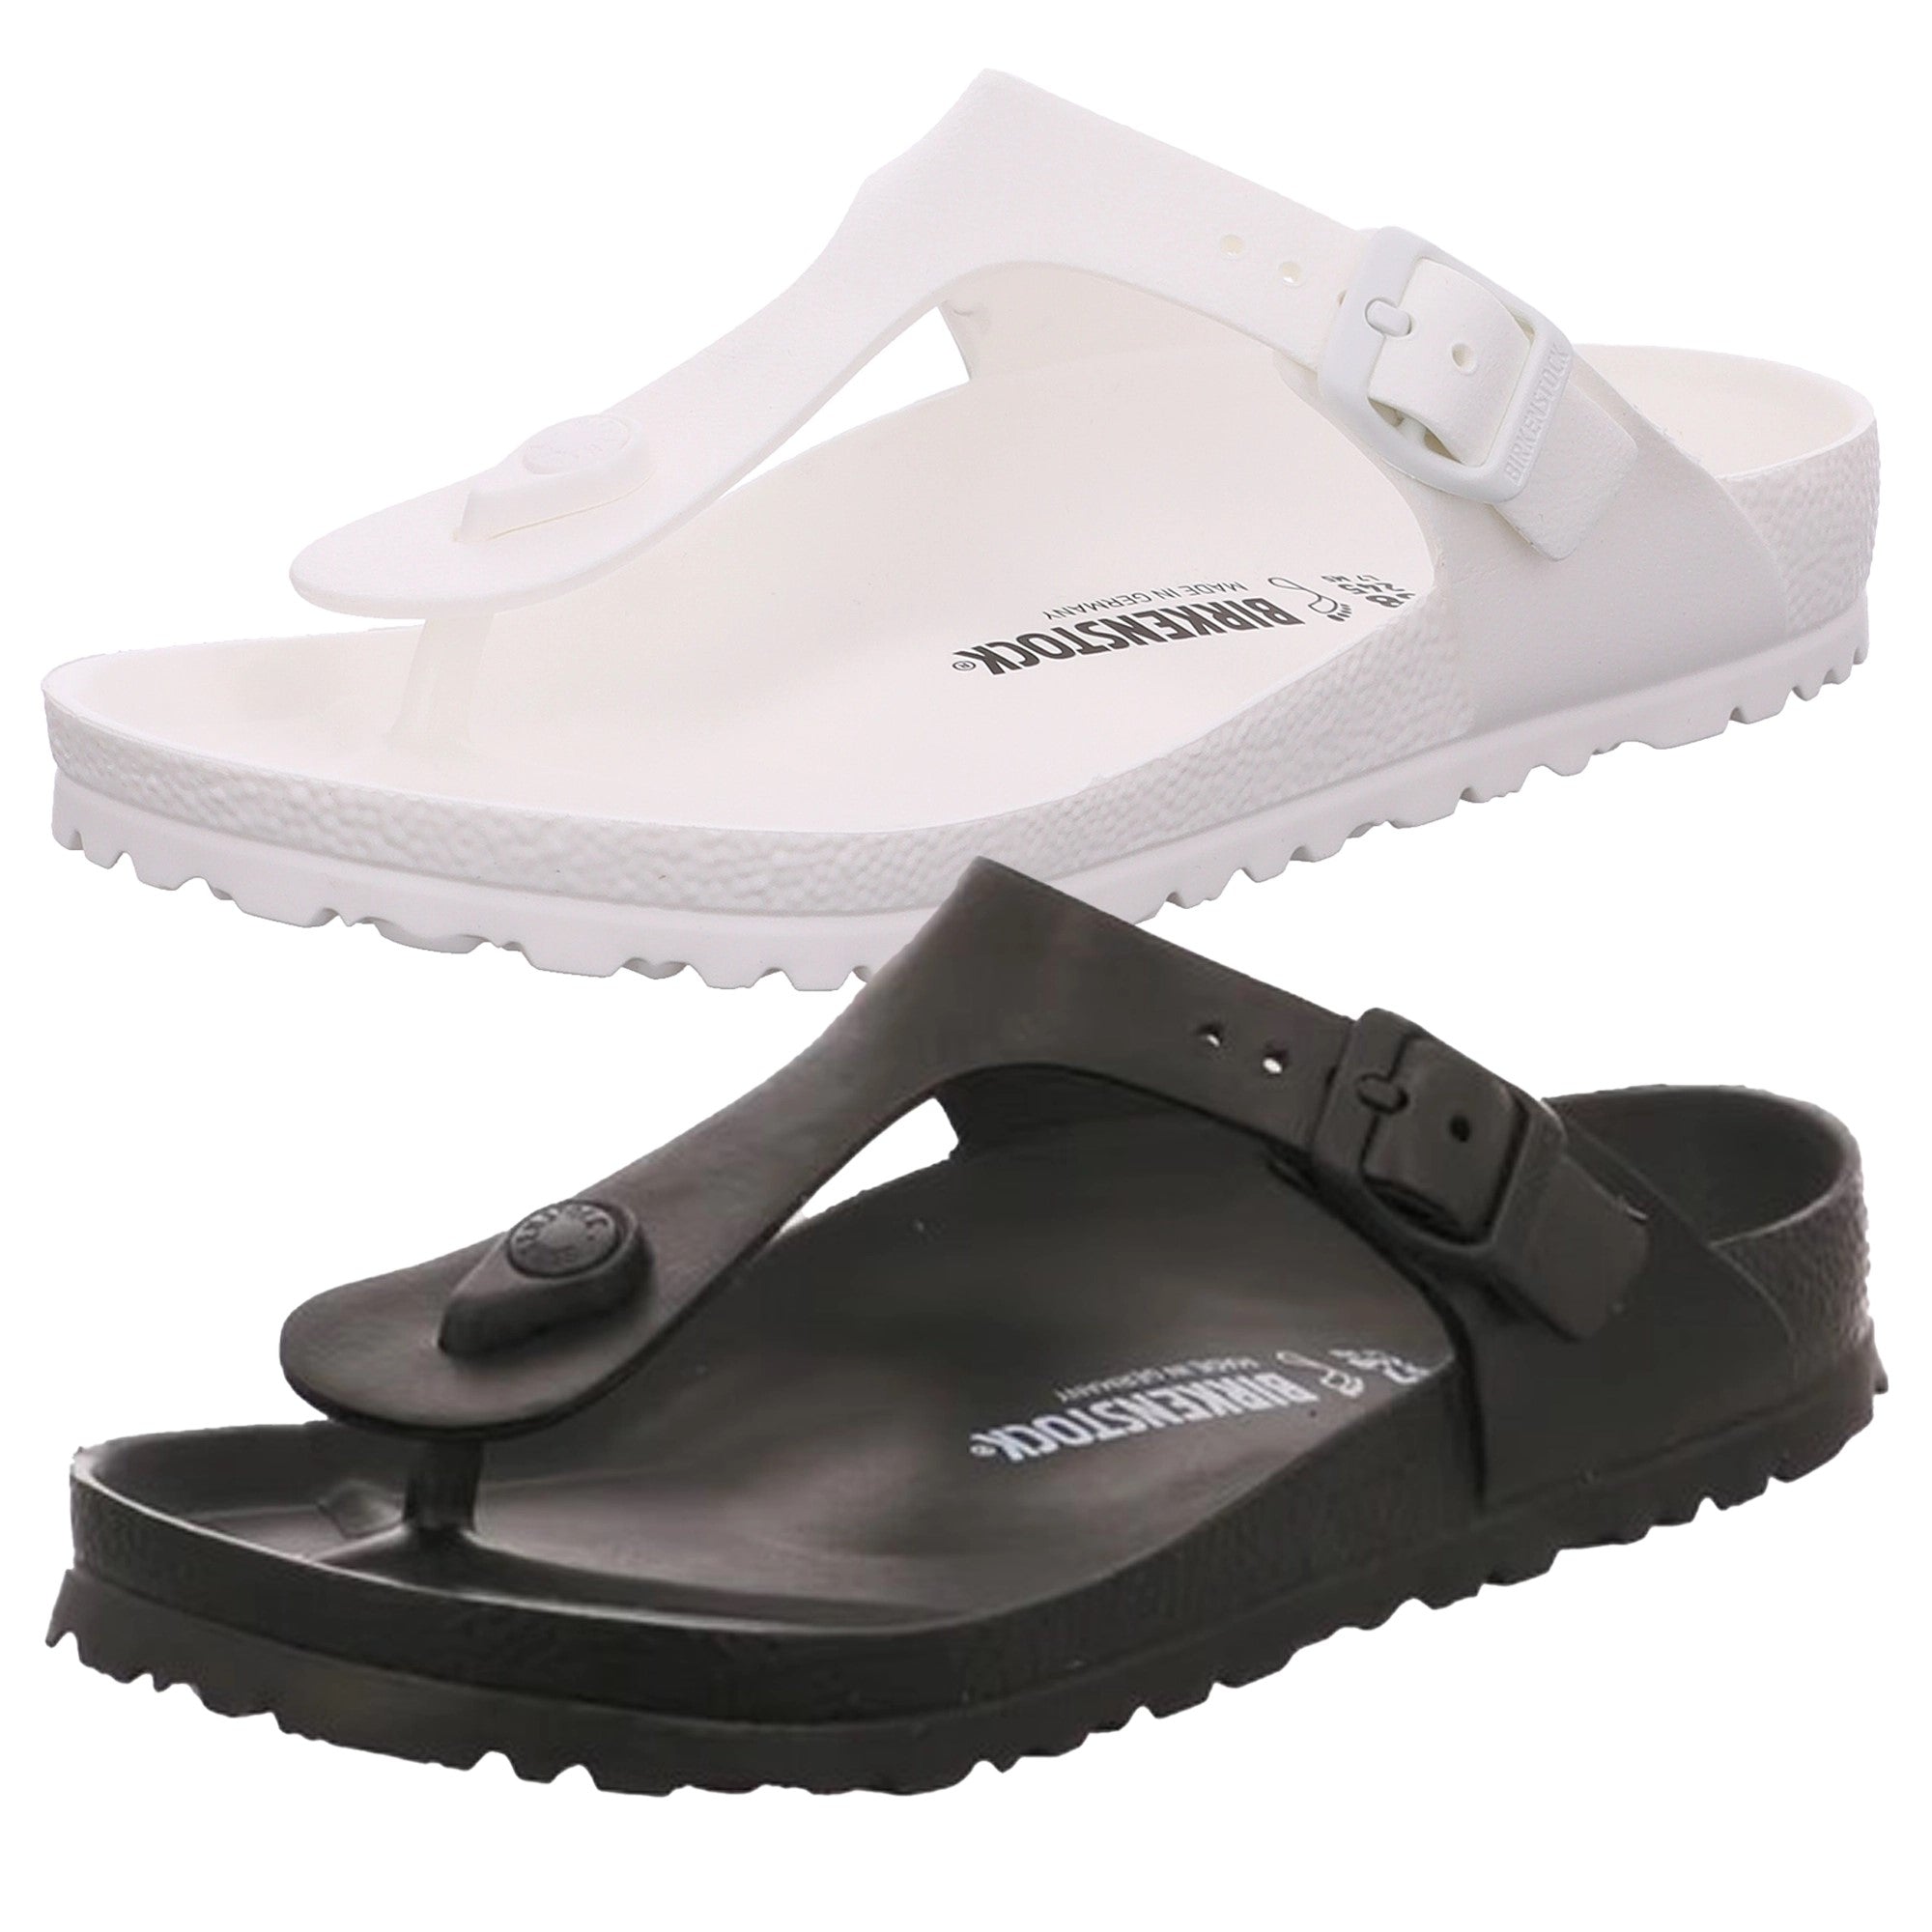 Birkenstock Gizeh EVA Slides Sandals Buckle Beach Summer water resistant Men